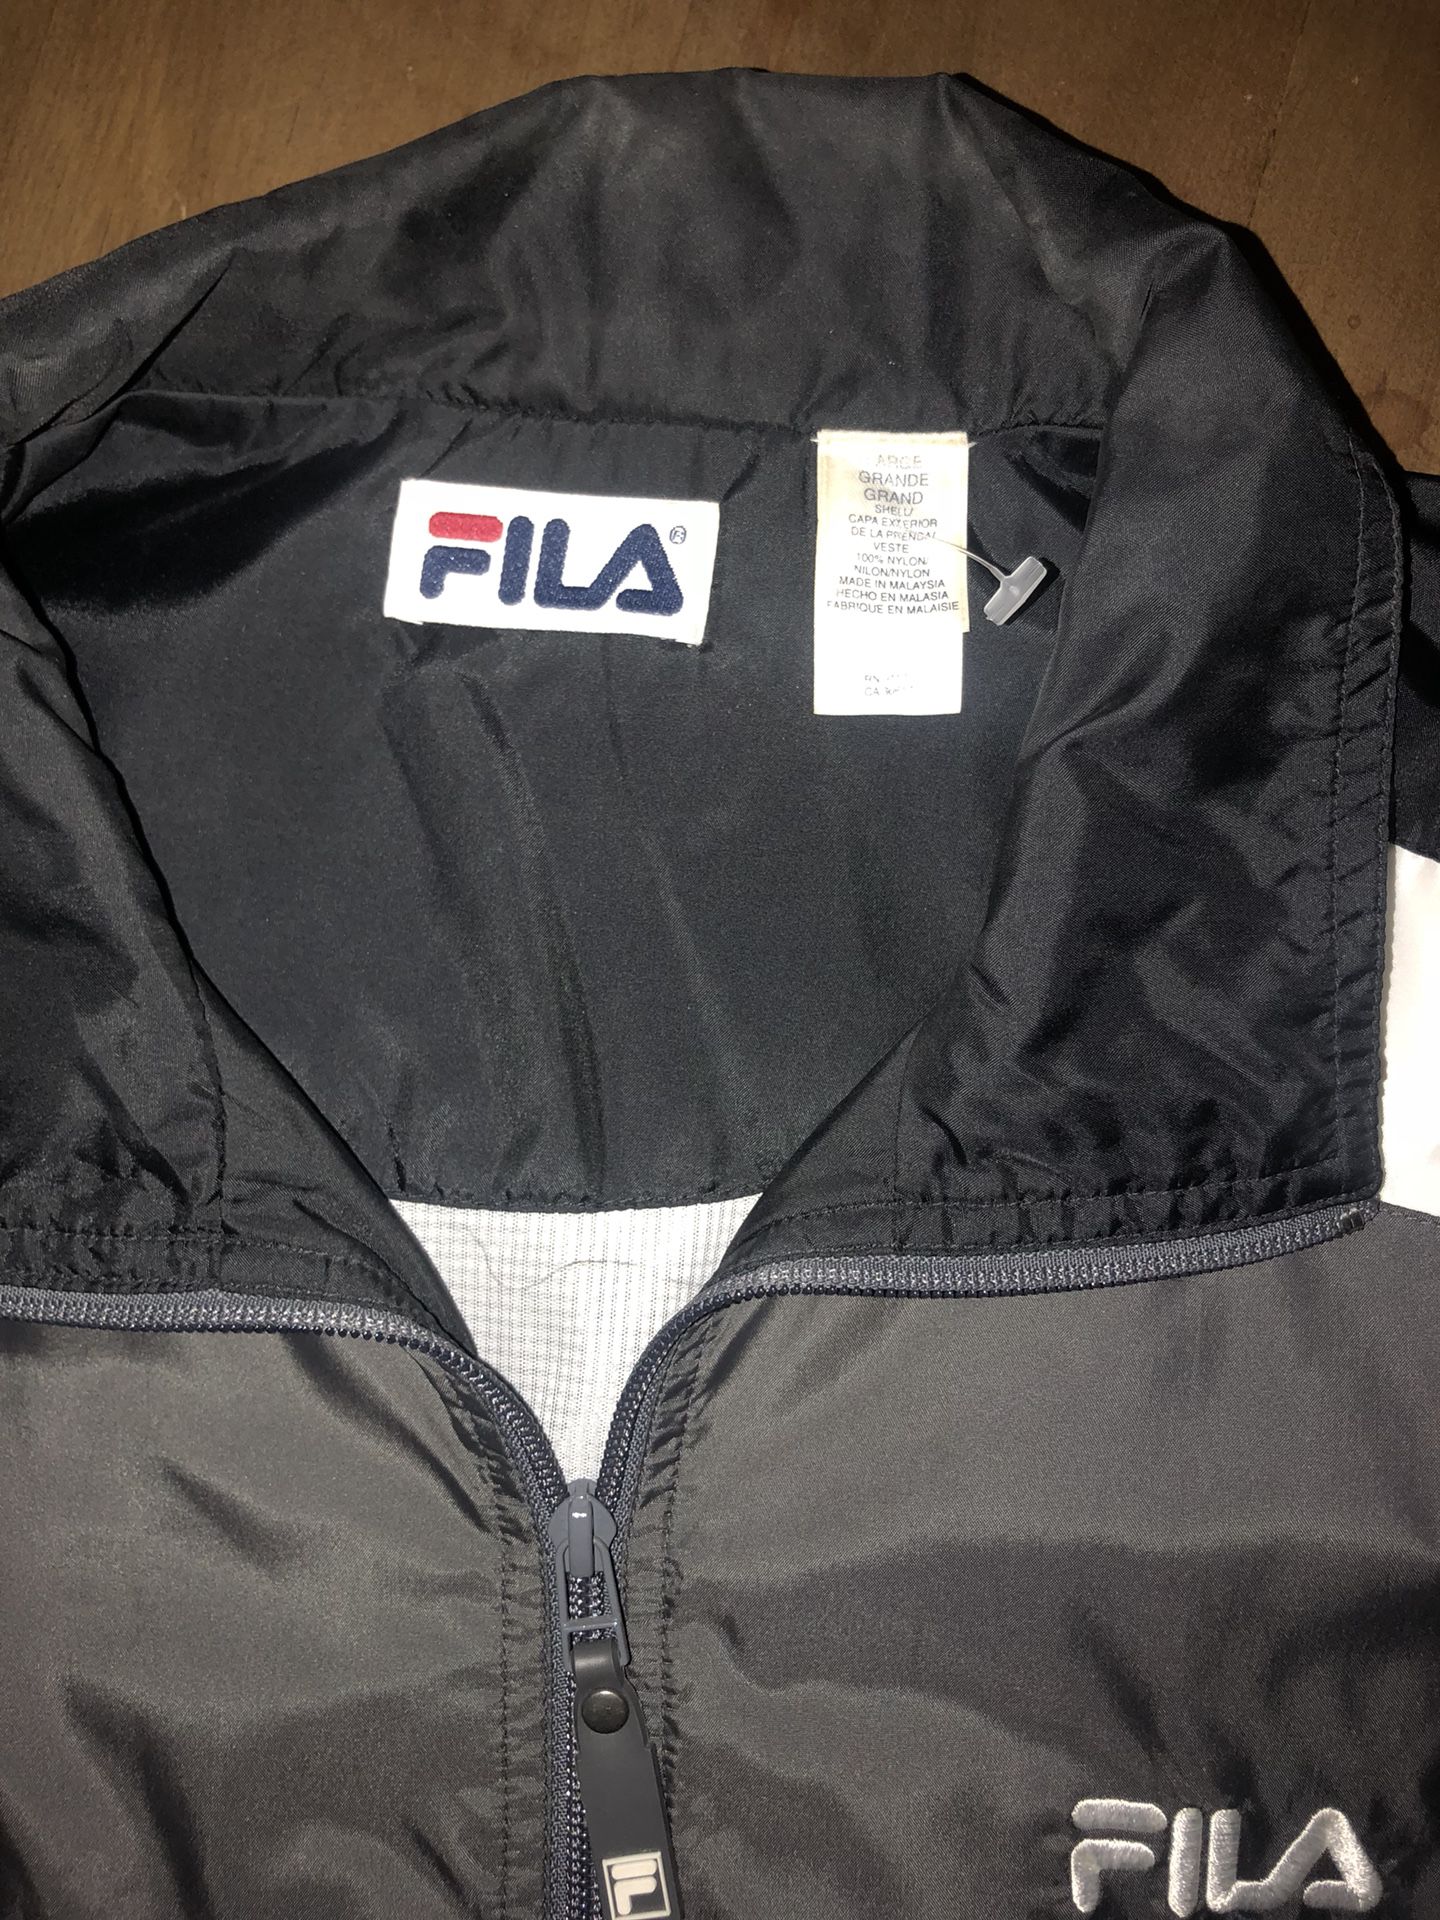 Fila Windbreaker Jump Suite Jacket & pants for Sale in Lodi, CA - OfferUp